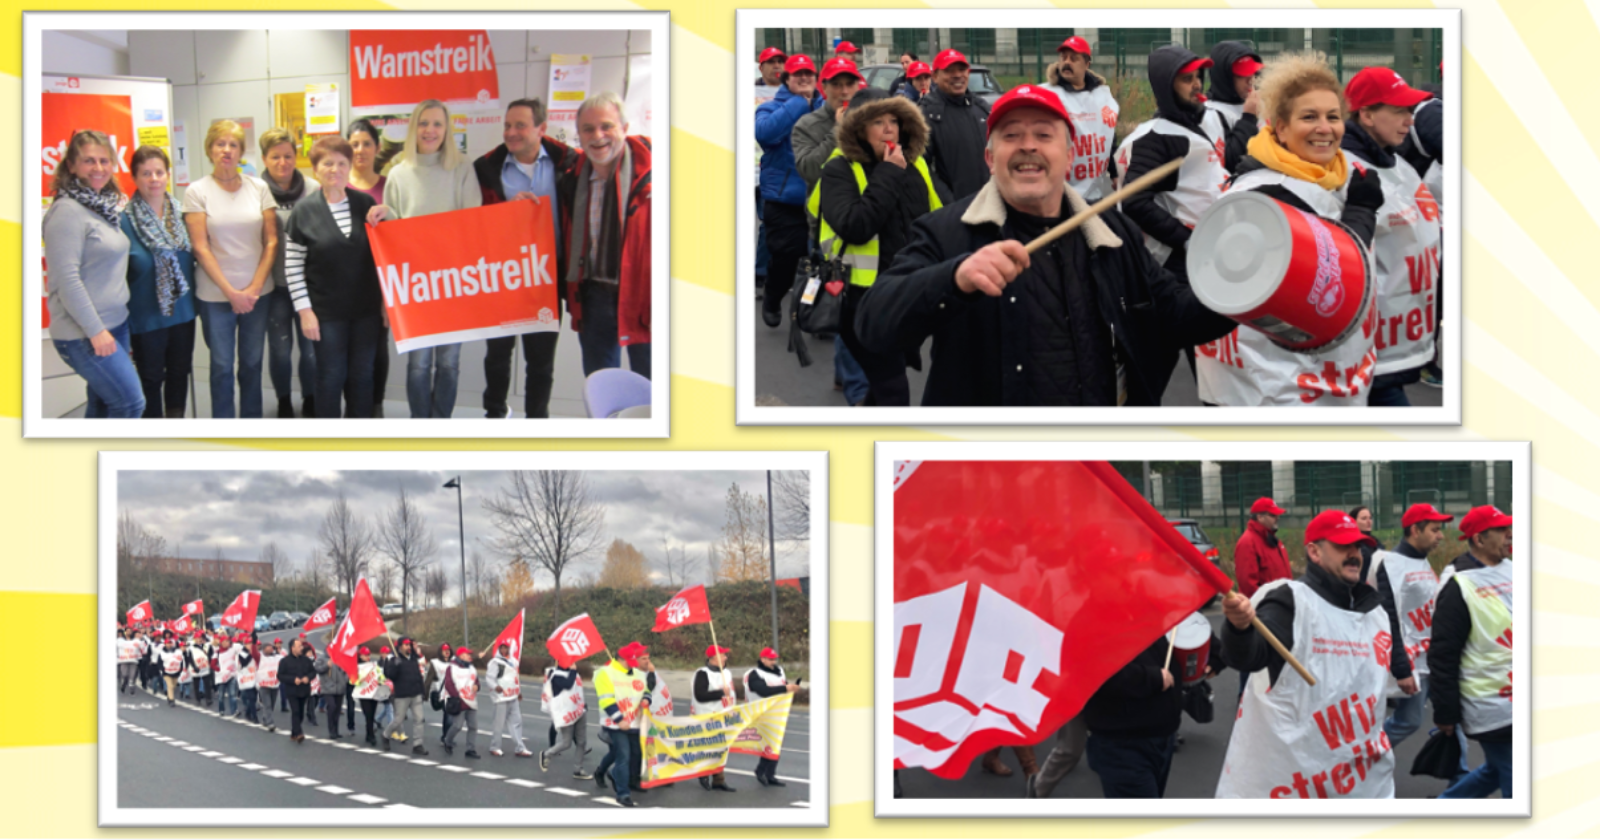 Impressionen von gestrigen Streiks in Wiesbaden und Frankfurt a.M.